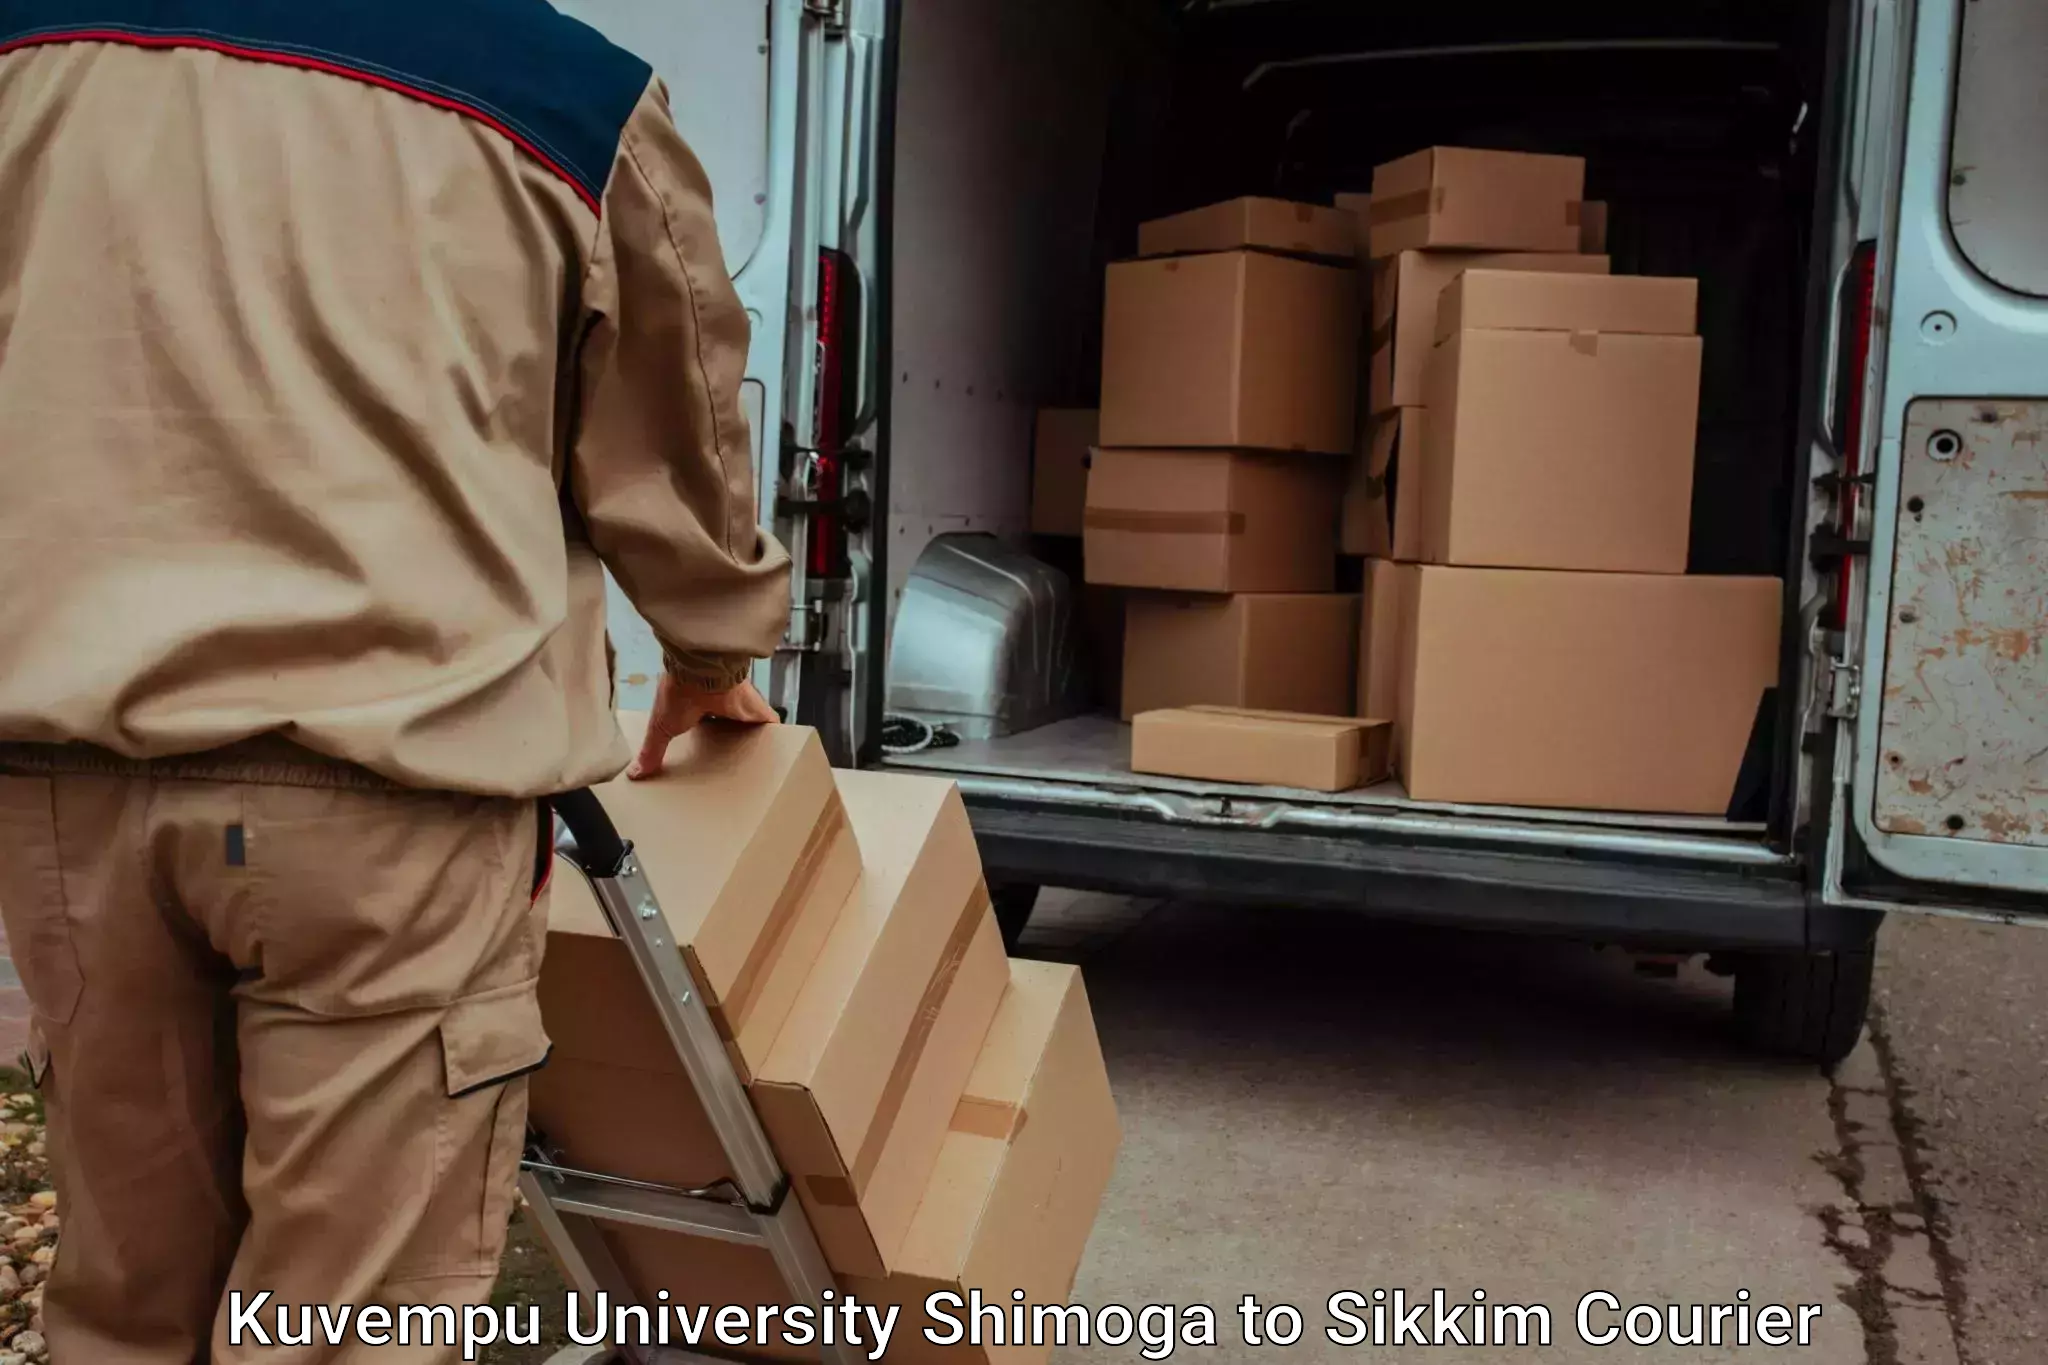 Customized moving experience Kuvempu University Shimoga to East Sikkim